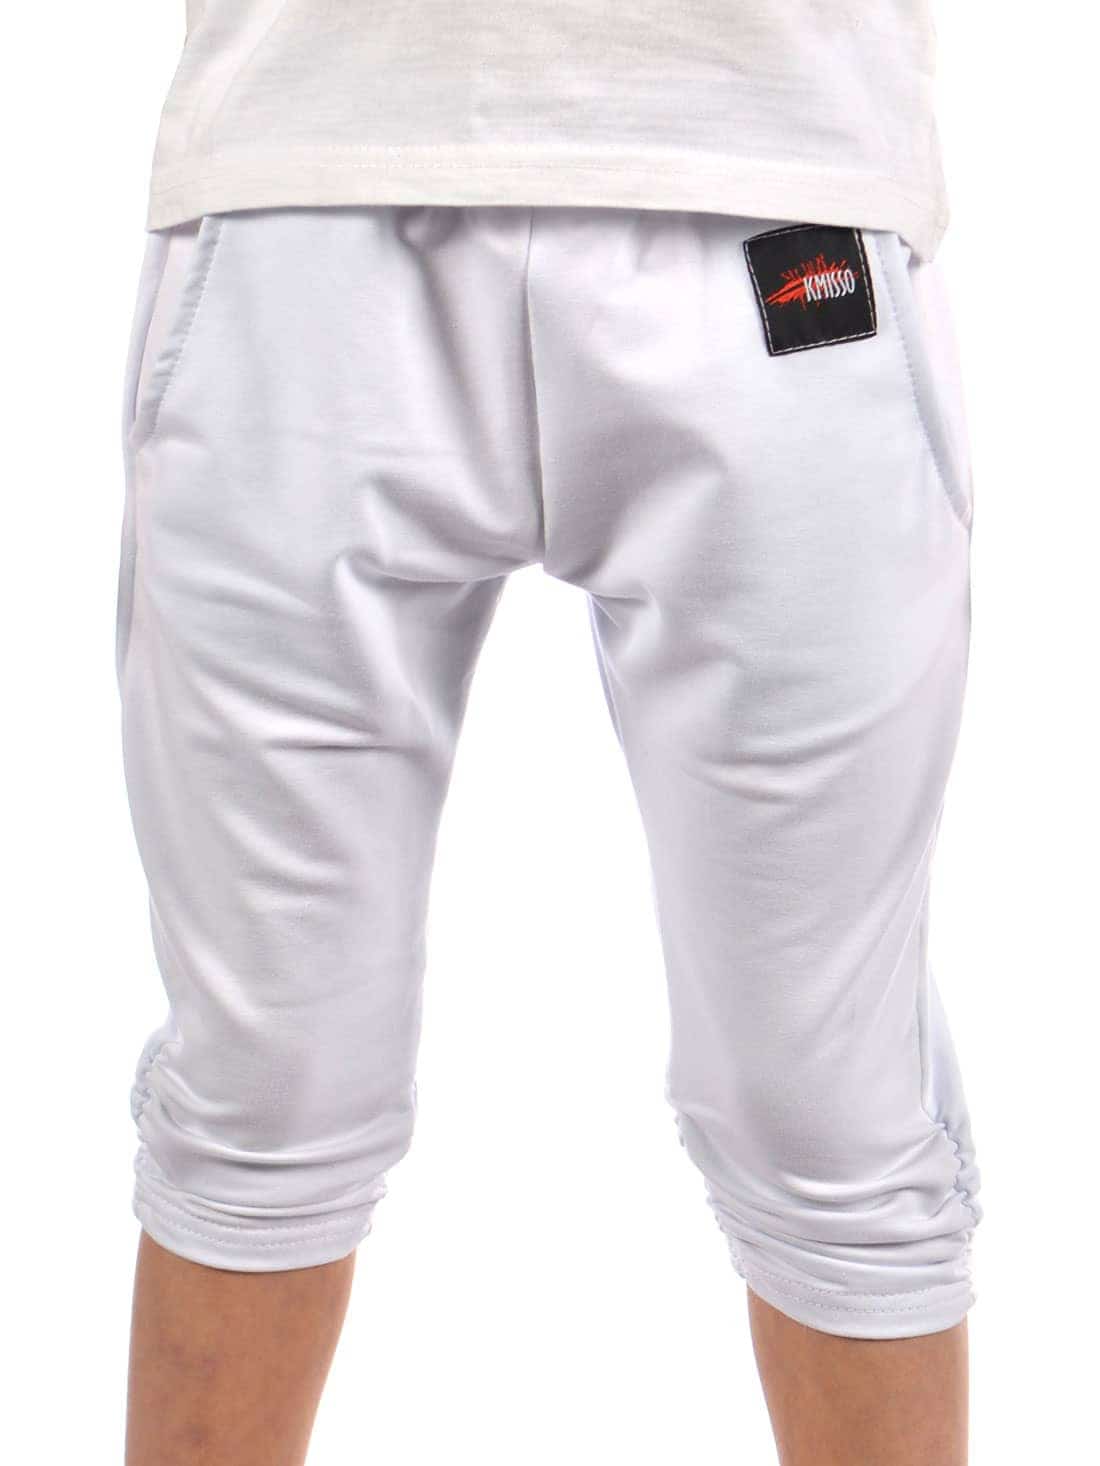 Тканевые брюки Kmisso Capri, белый